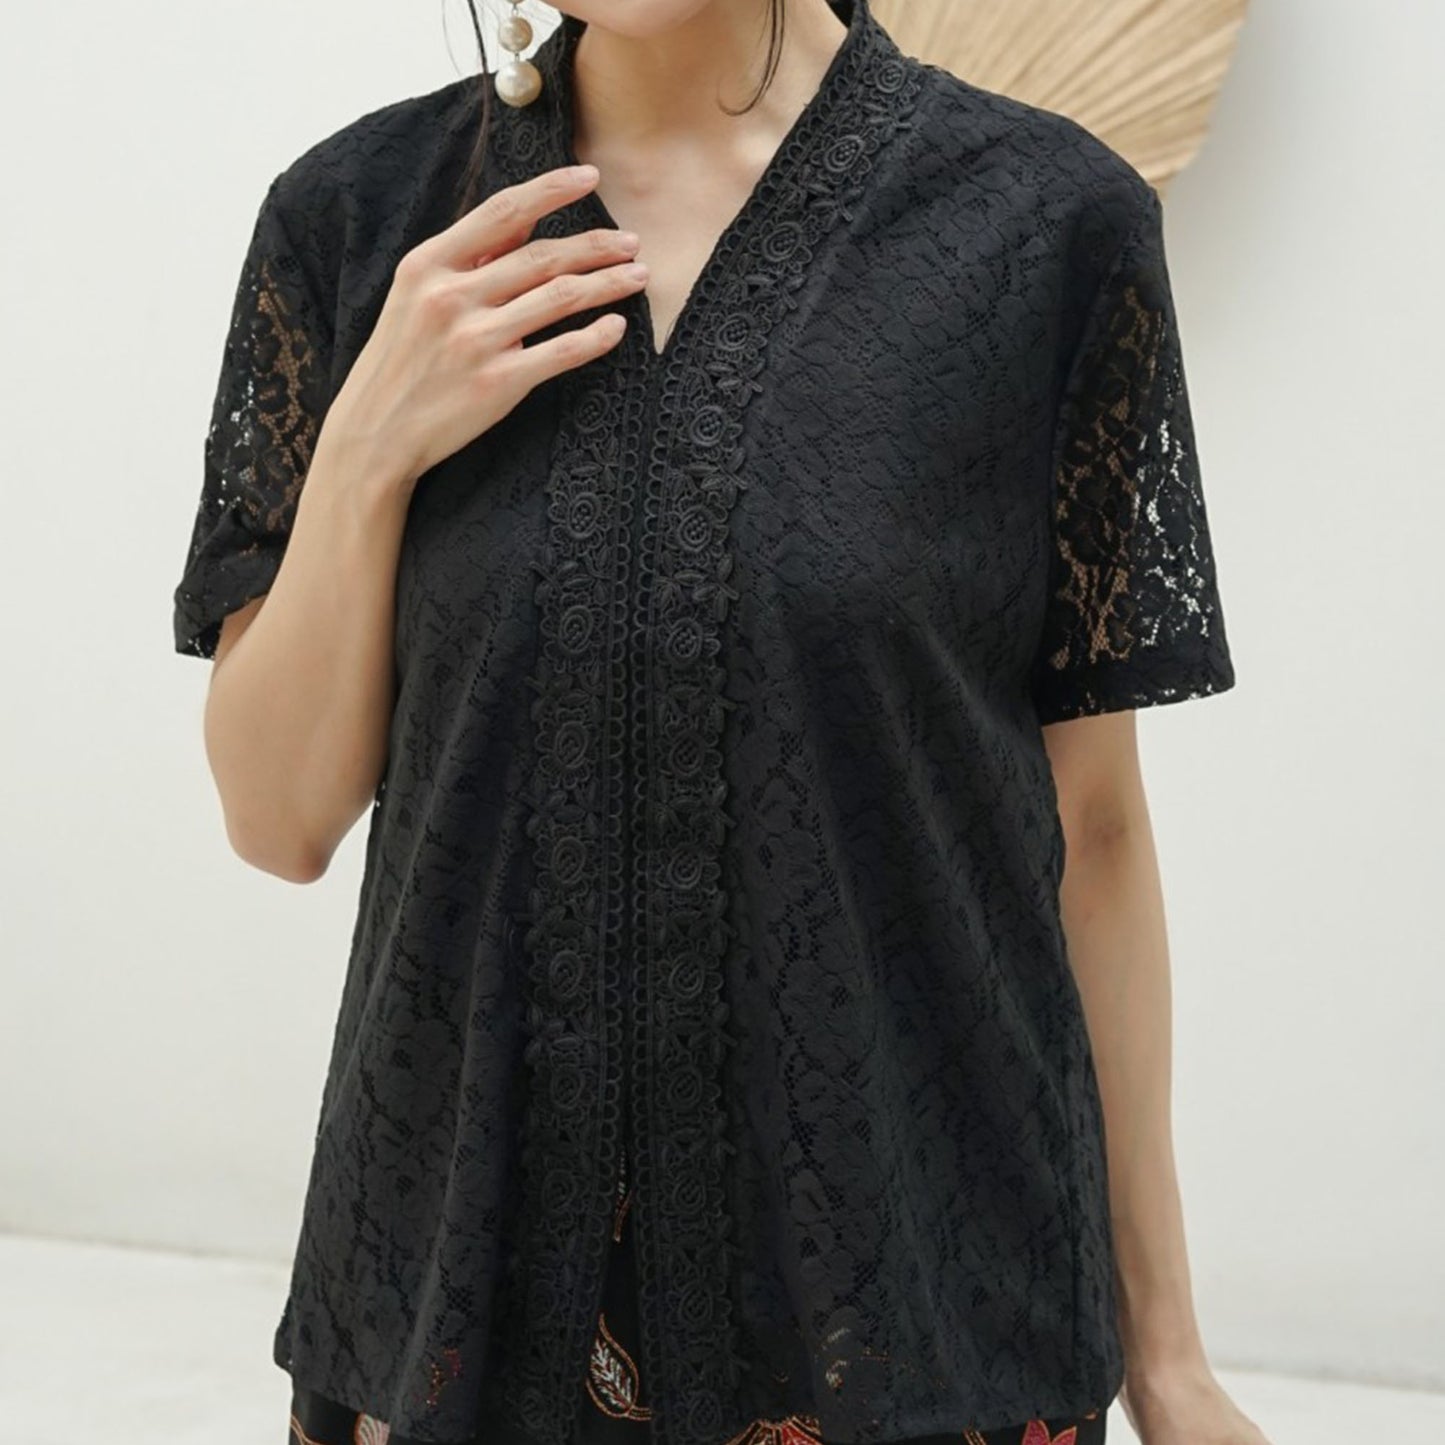 Jumbo Size Elegant Black Lace Short Sleeve Kebaya Encim